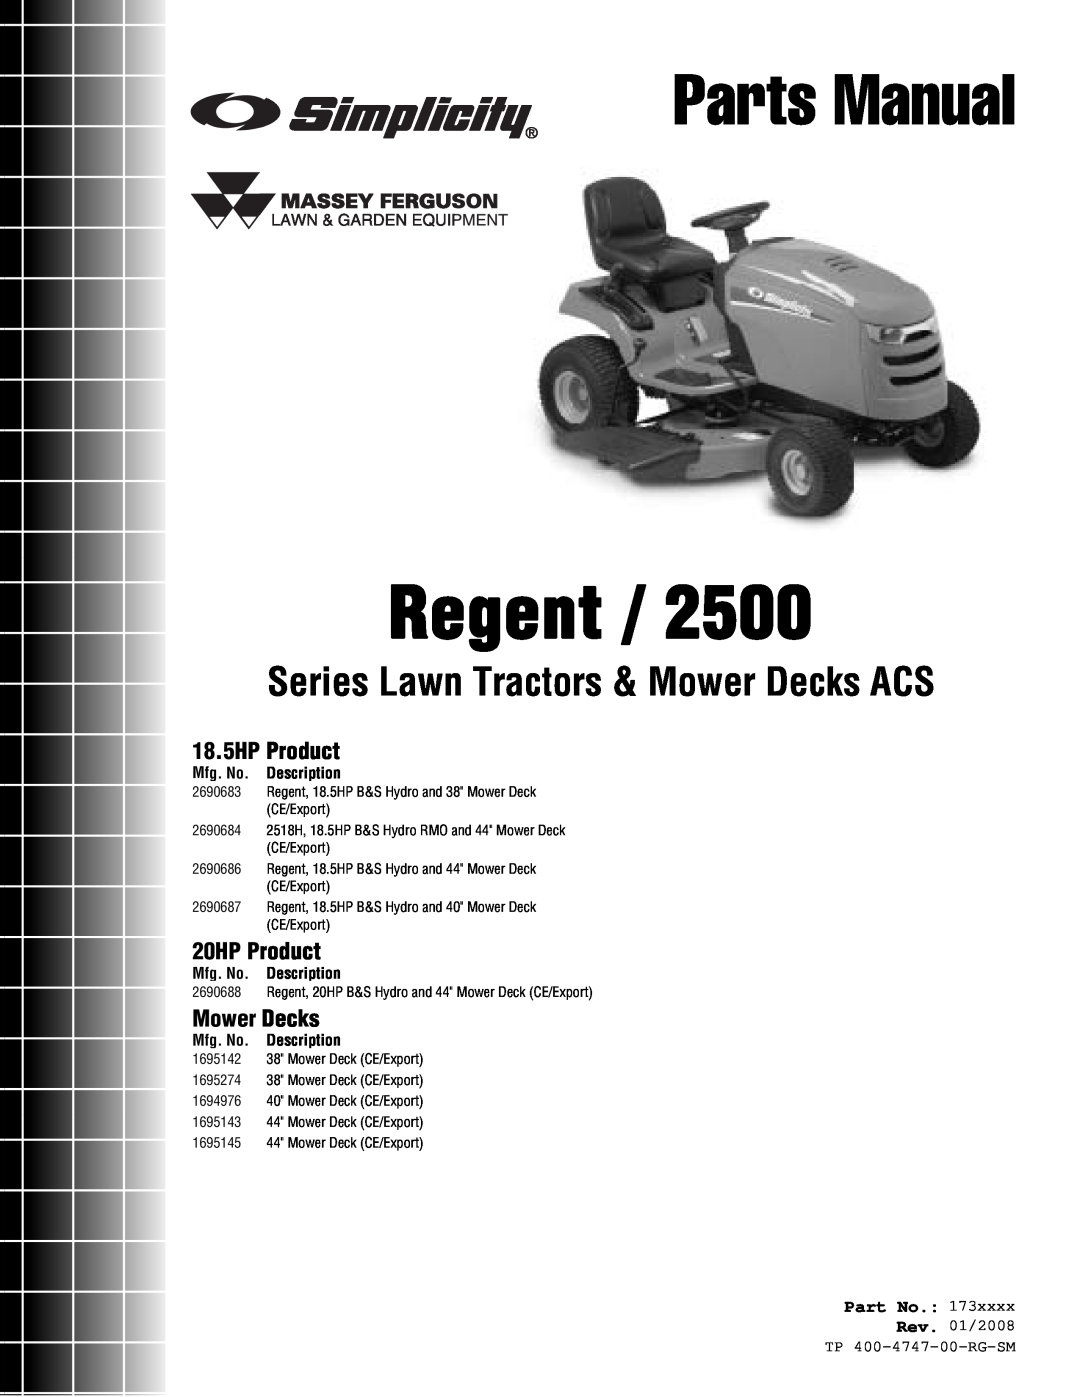 Simplicity Regent / 2500 manual 18.5HP Product, 20HP Product, Mower Decks, Part No, Mfg. No. Description, Parts Manual 